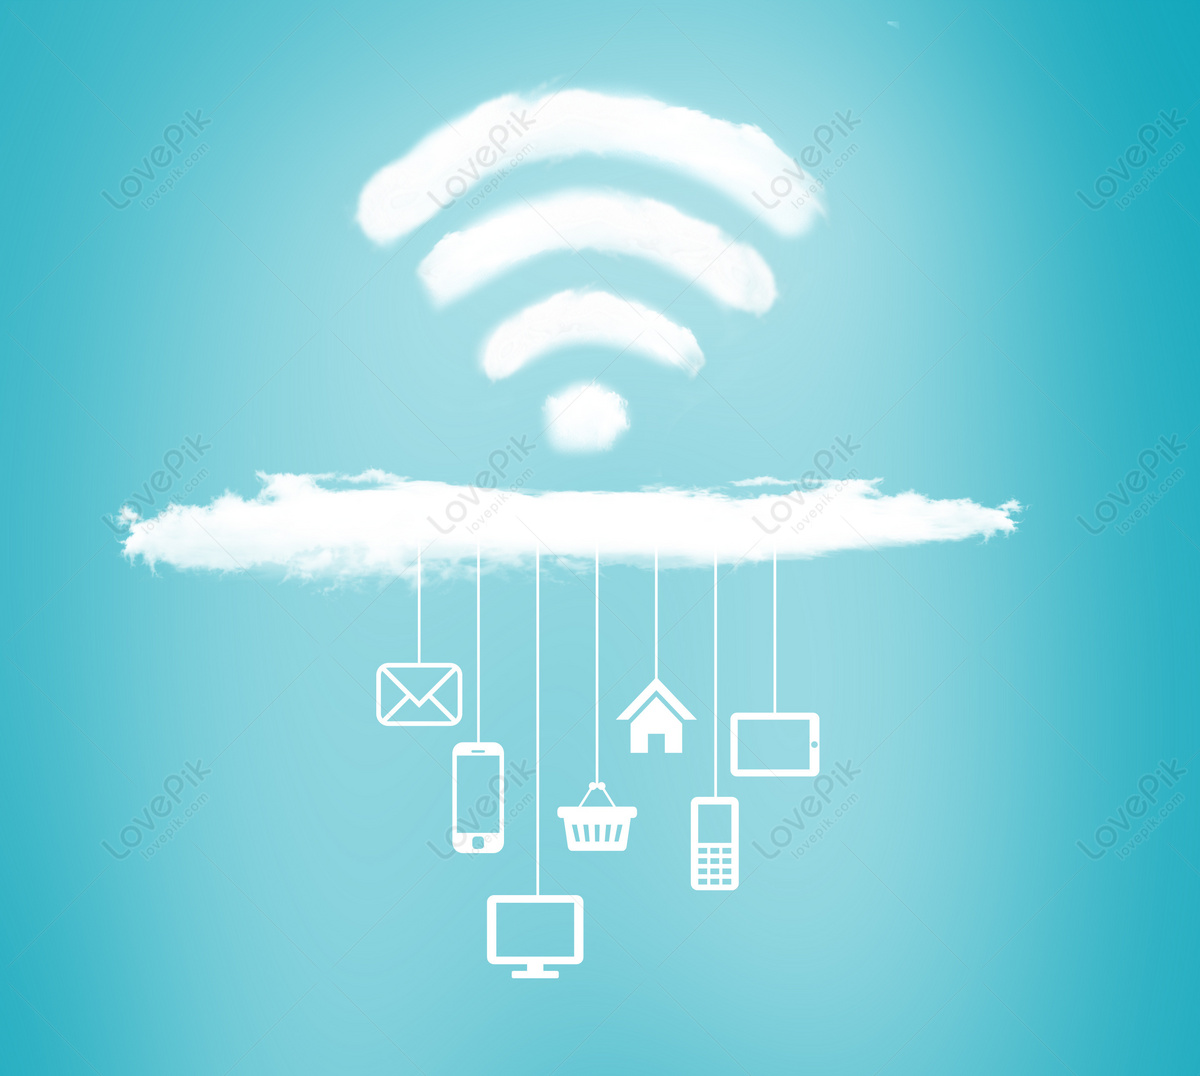 Công nghệ wifi đang thay đổi nhanh chóng làn sóng kết nối di động của chúng ta. Chúng tôi cam kết mang đến cho bạn những trải nghiệm kết nối tốt nhất, nhanh chóng và ổn định nhất, để bạn có thể kết nối với thế giới một cách dễ dàng và thuận tiện hơn.